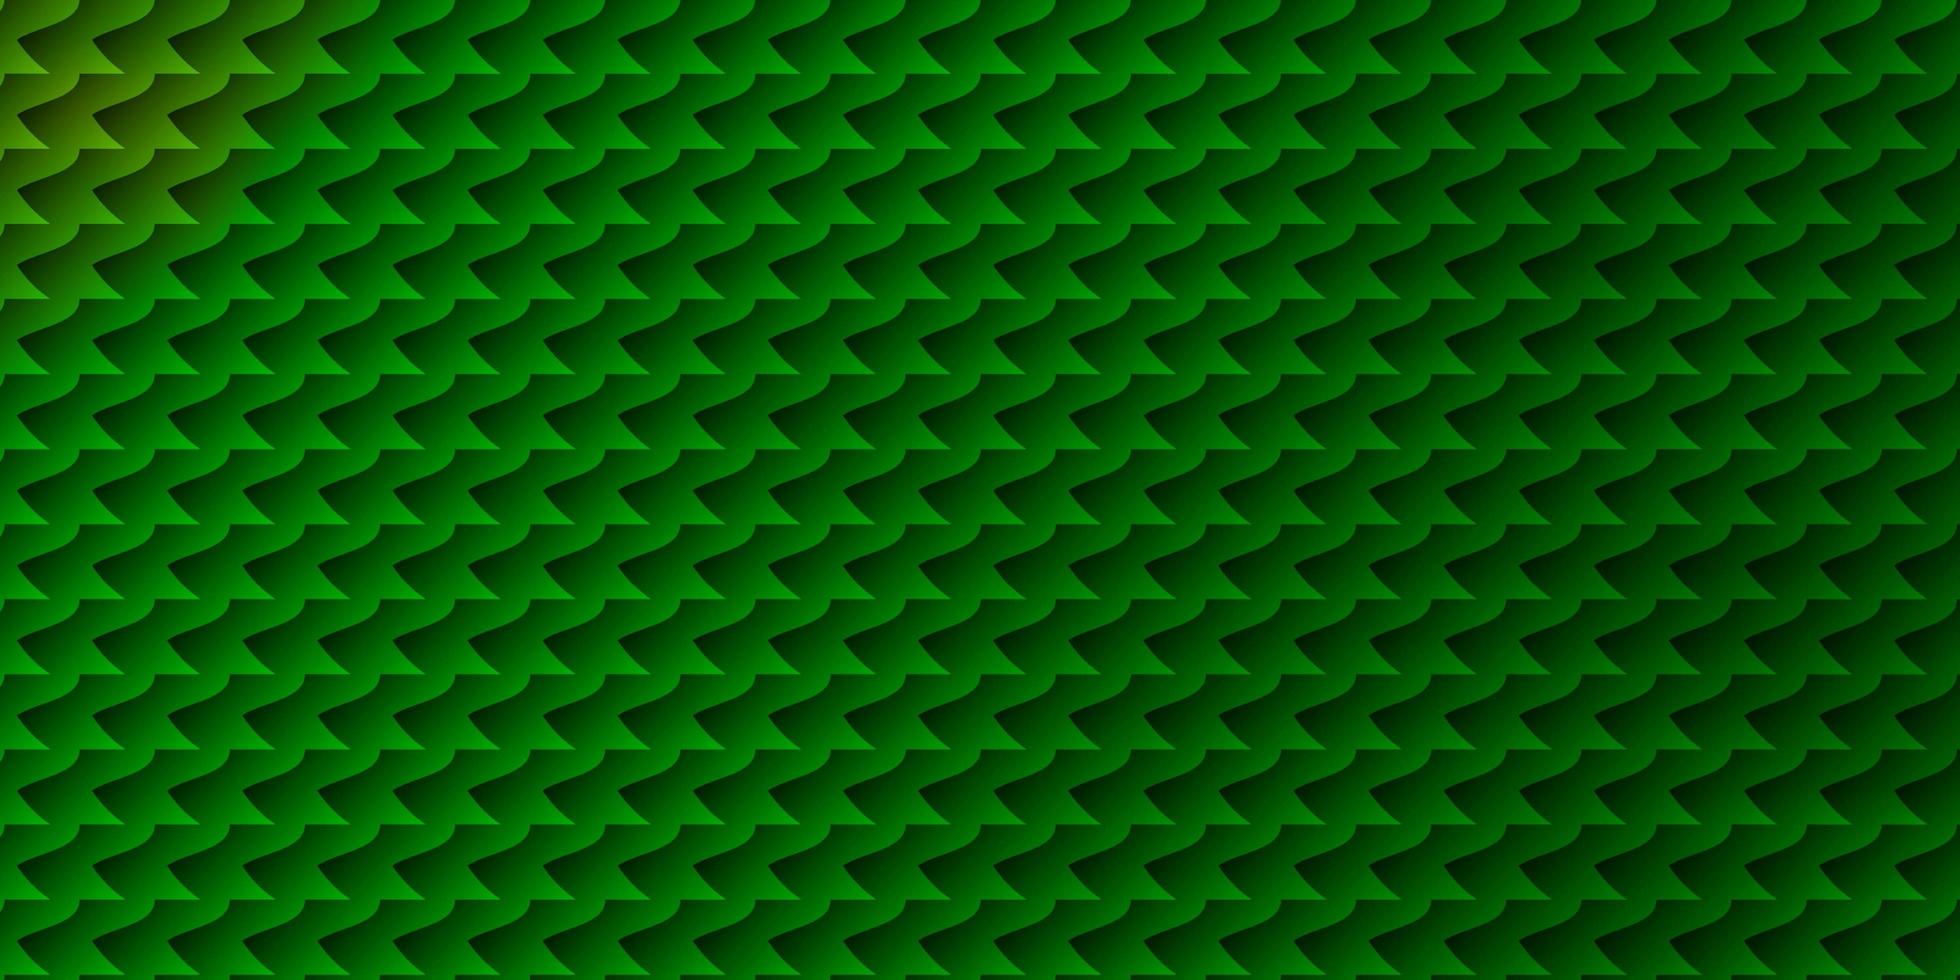 patrón de vector verde claro en estilo cuadrado.